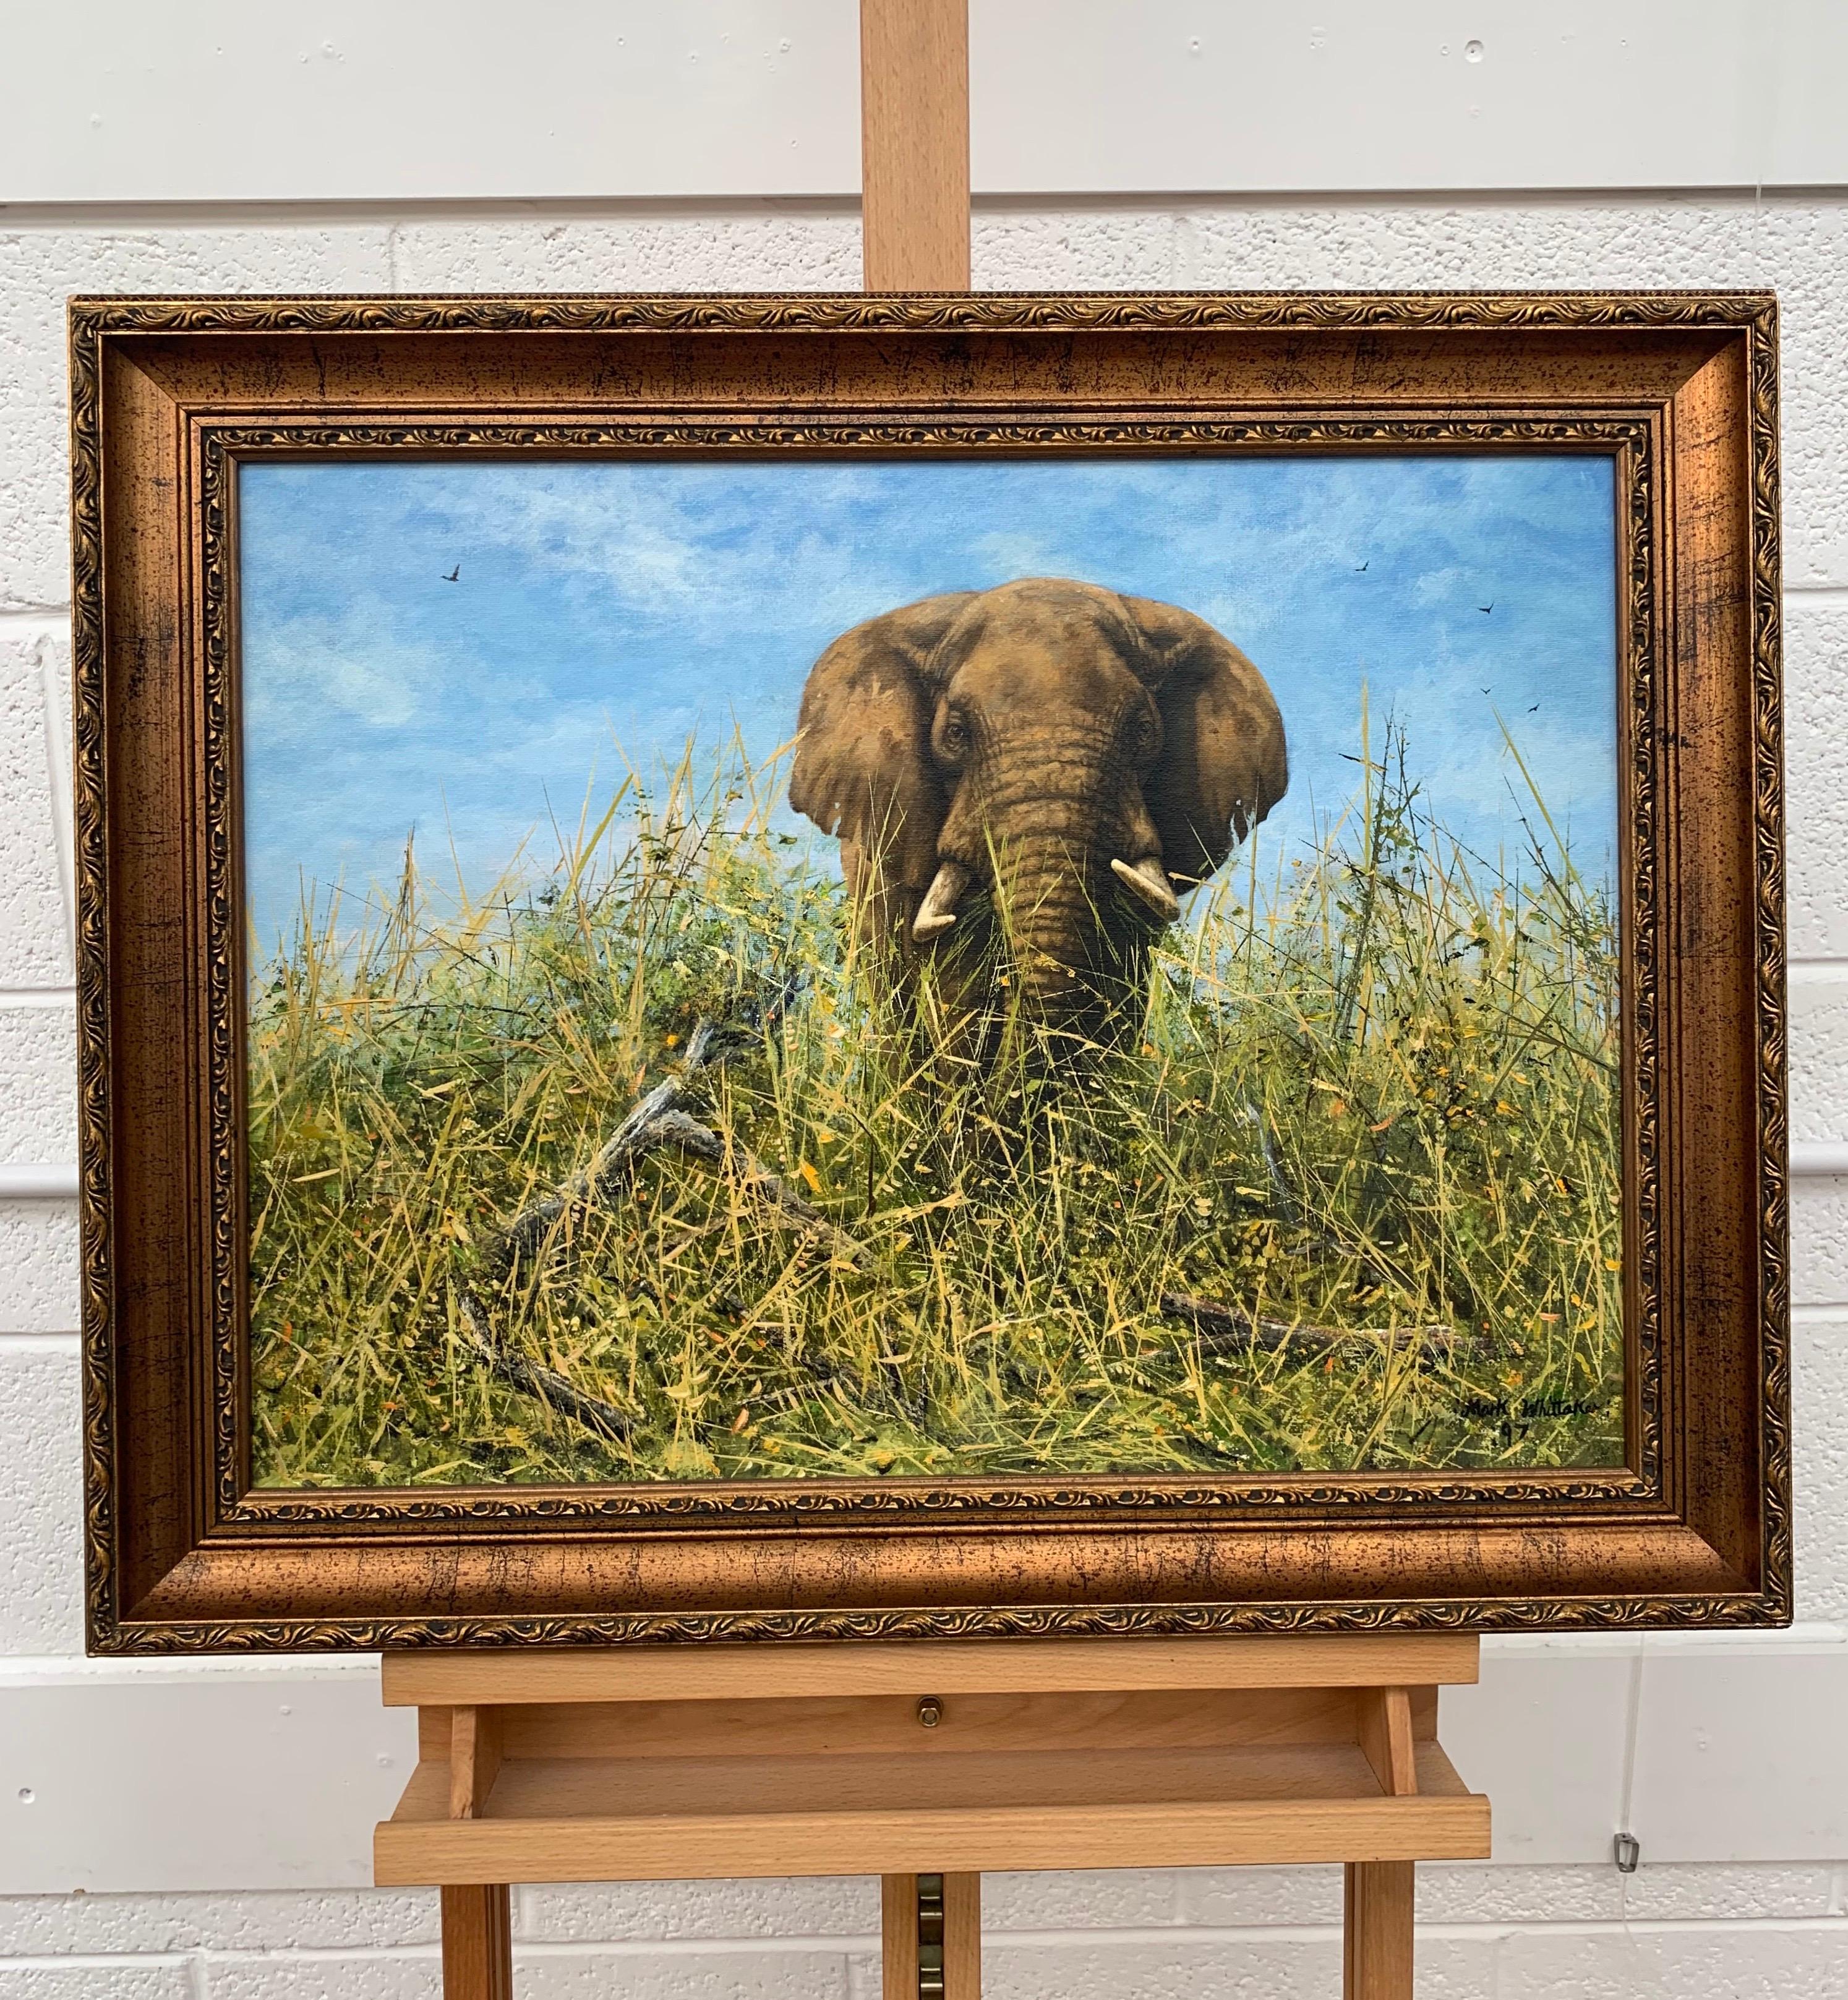 Peinture à l'huile originale d'un éléphant dans la nature par un artiste contemporain britannique - Réalisme Painting par Mark Whittaker